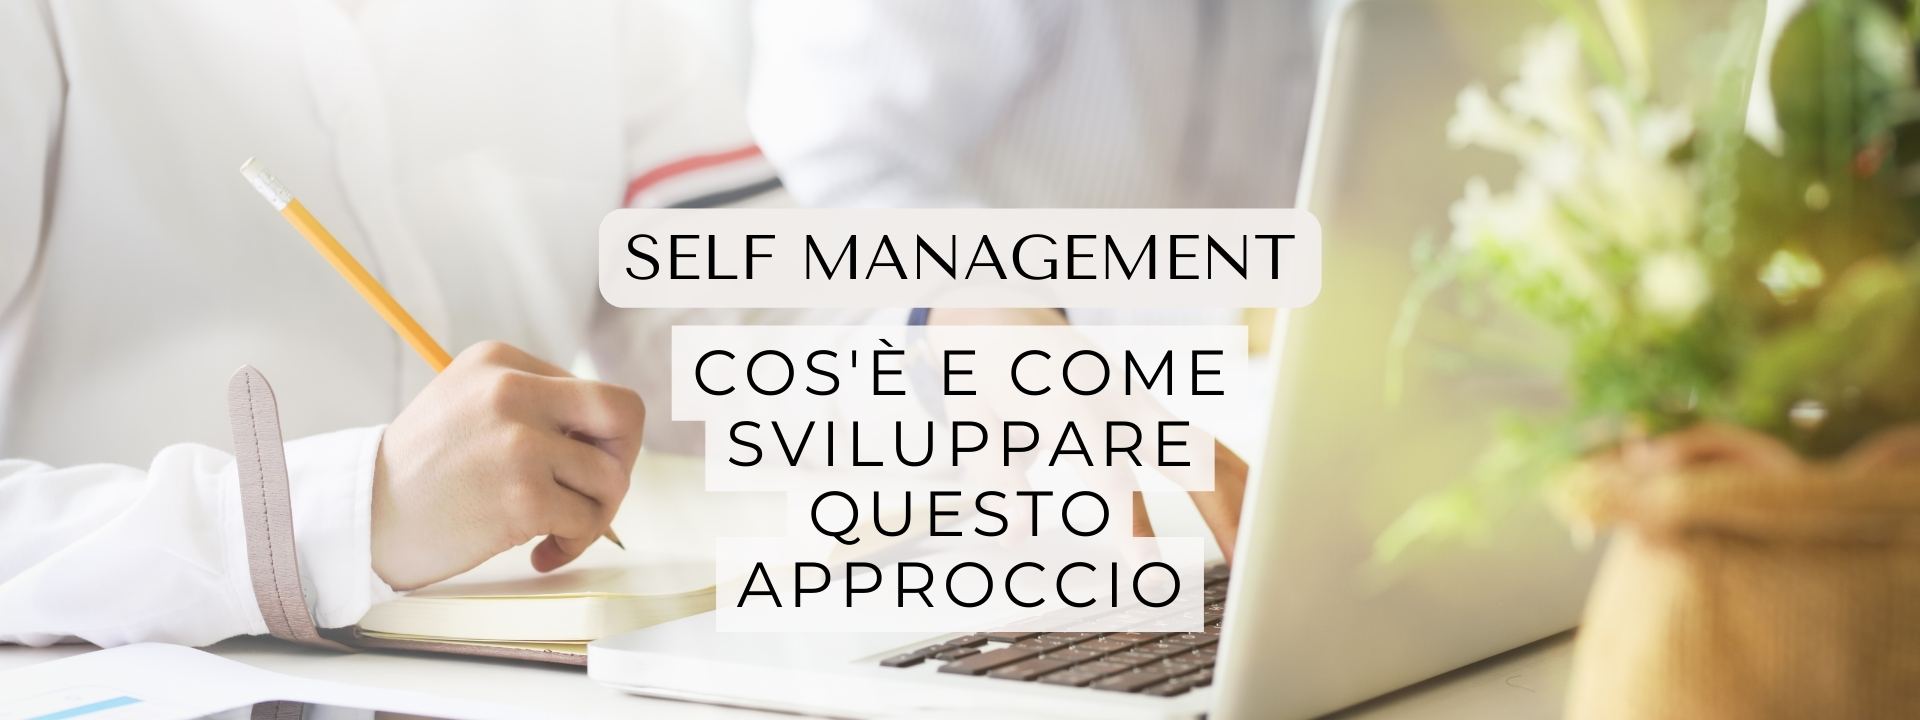 Approccio del Self management